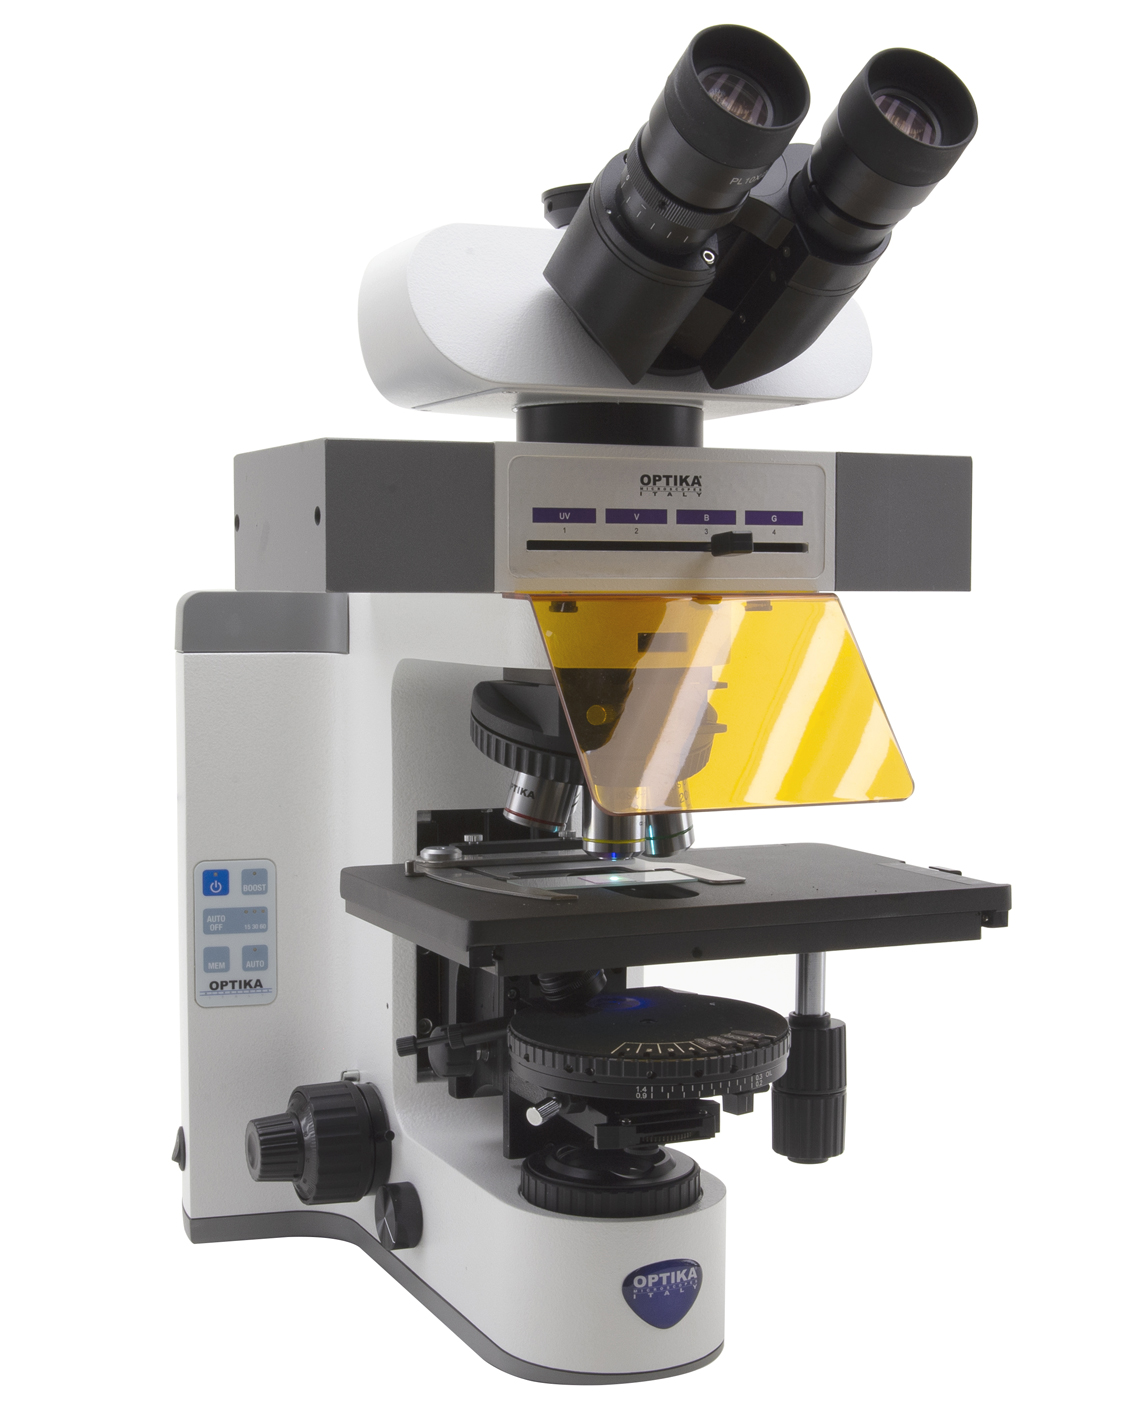 میکروسکوپ - microscope - OPTIKA - دستگاه - دستگاه ها و ملزومات آزمایشگاهی - فرادید آداک